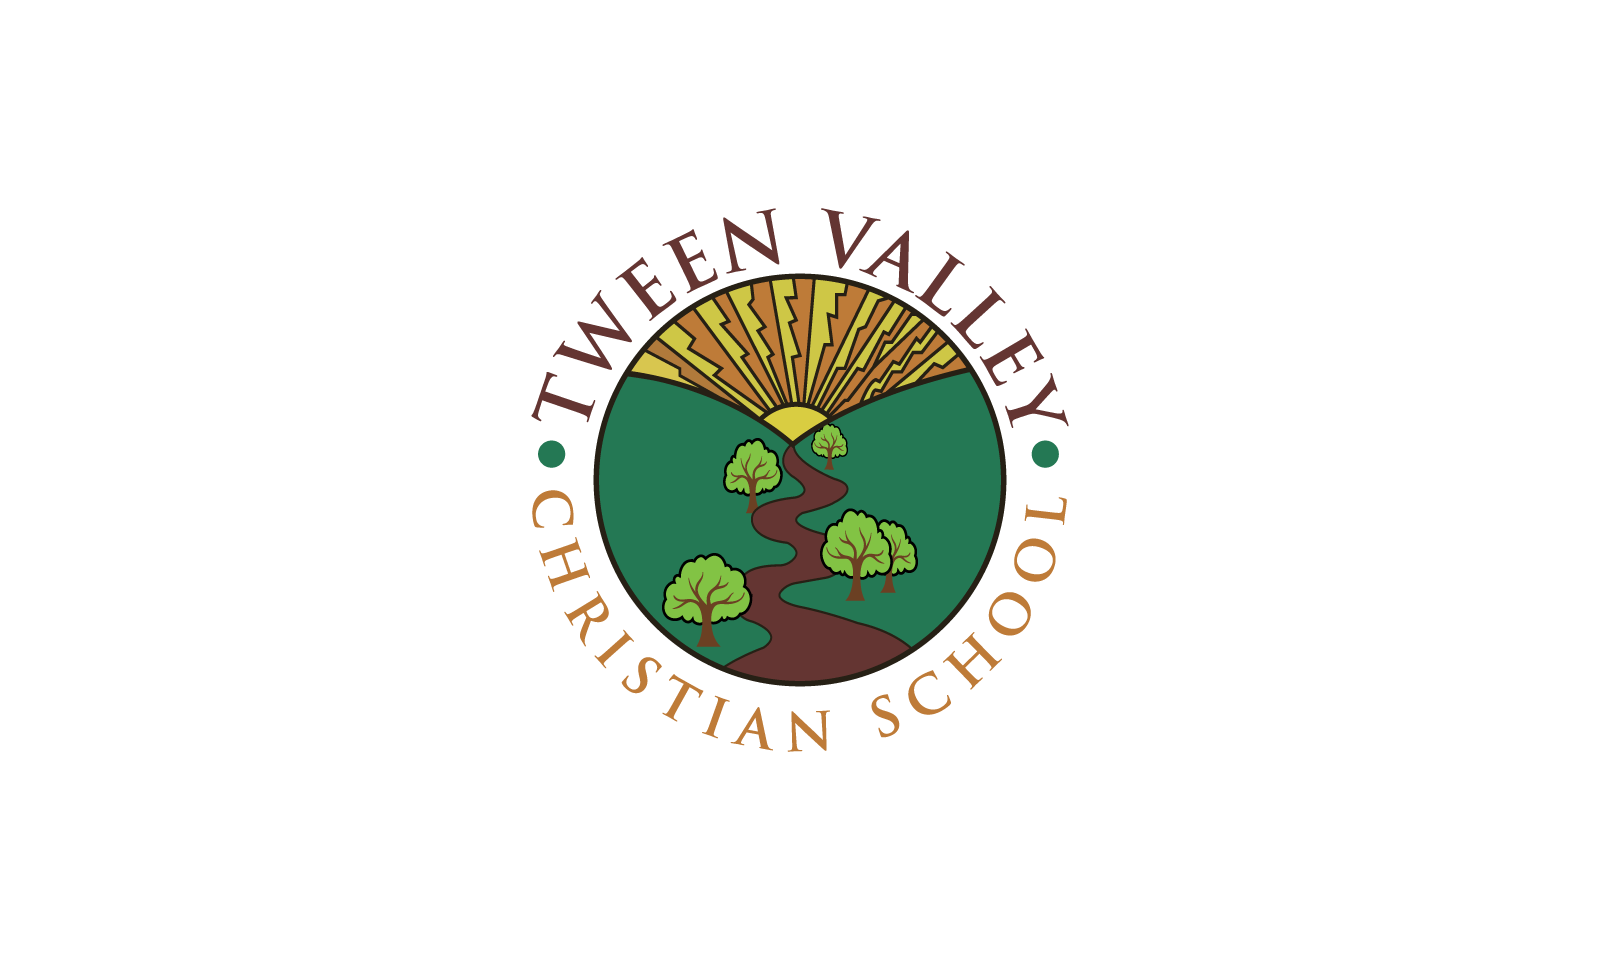 Tween Valley Christian School